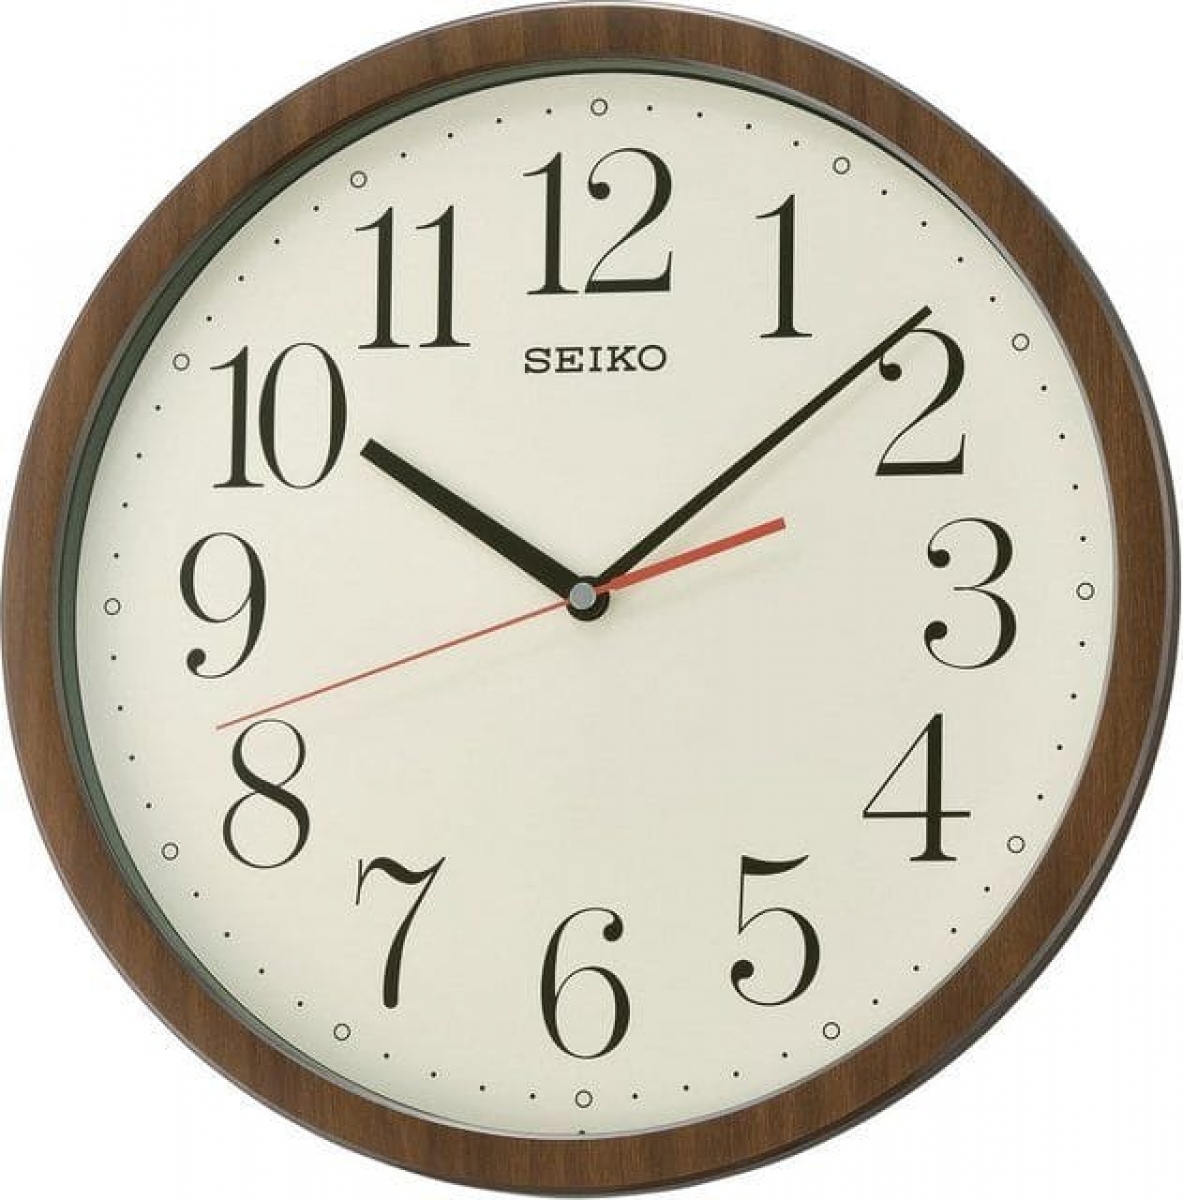 Модели часов настенных. Настенные часы Seiko qxa720bn. Настенные часы Seiko qxa525kn. Настенные часы Seiko qxa515b. Настенные часы Seiko qxa001gt.